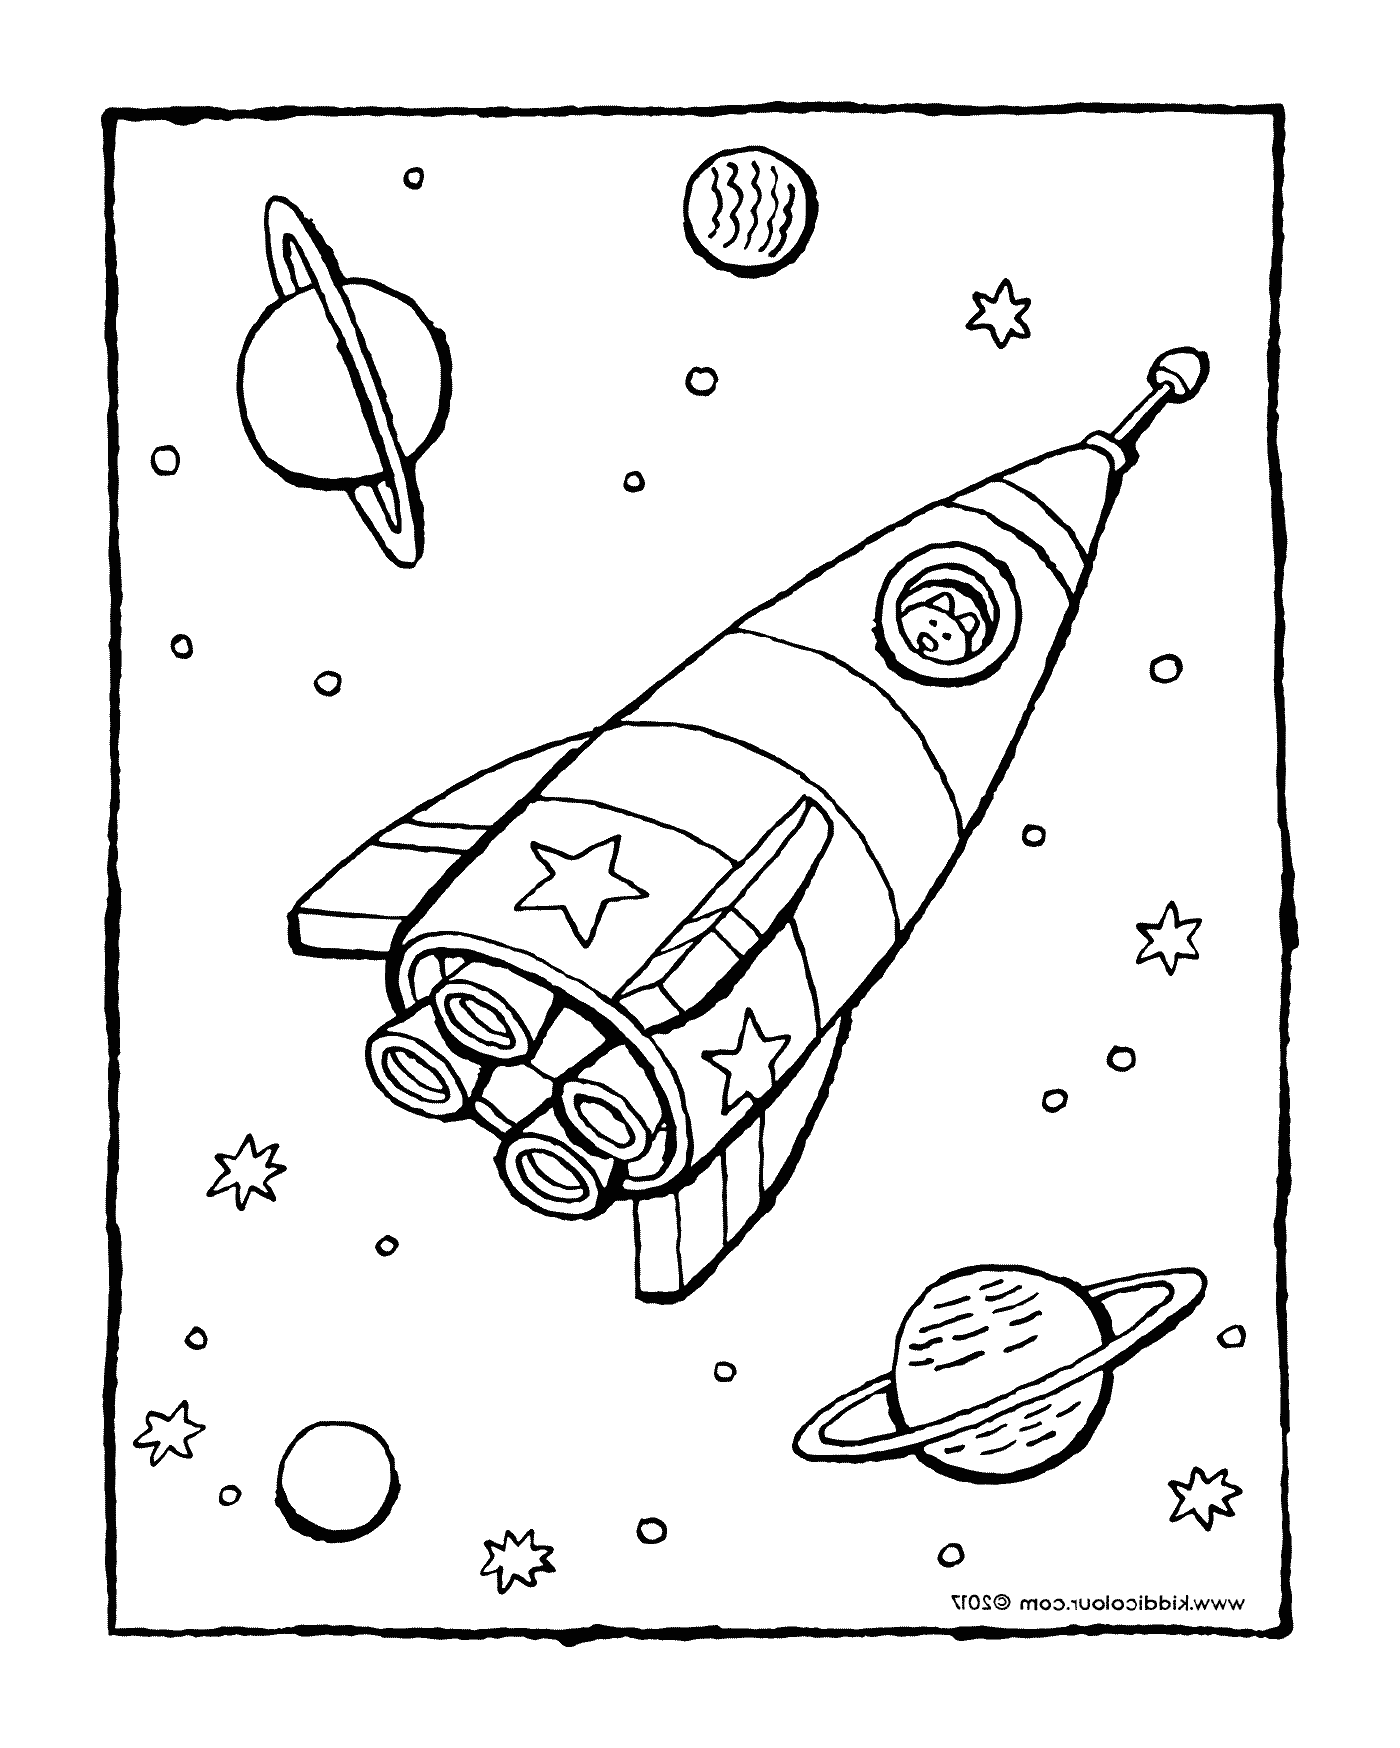  Decollo di un razzo nello spazio 